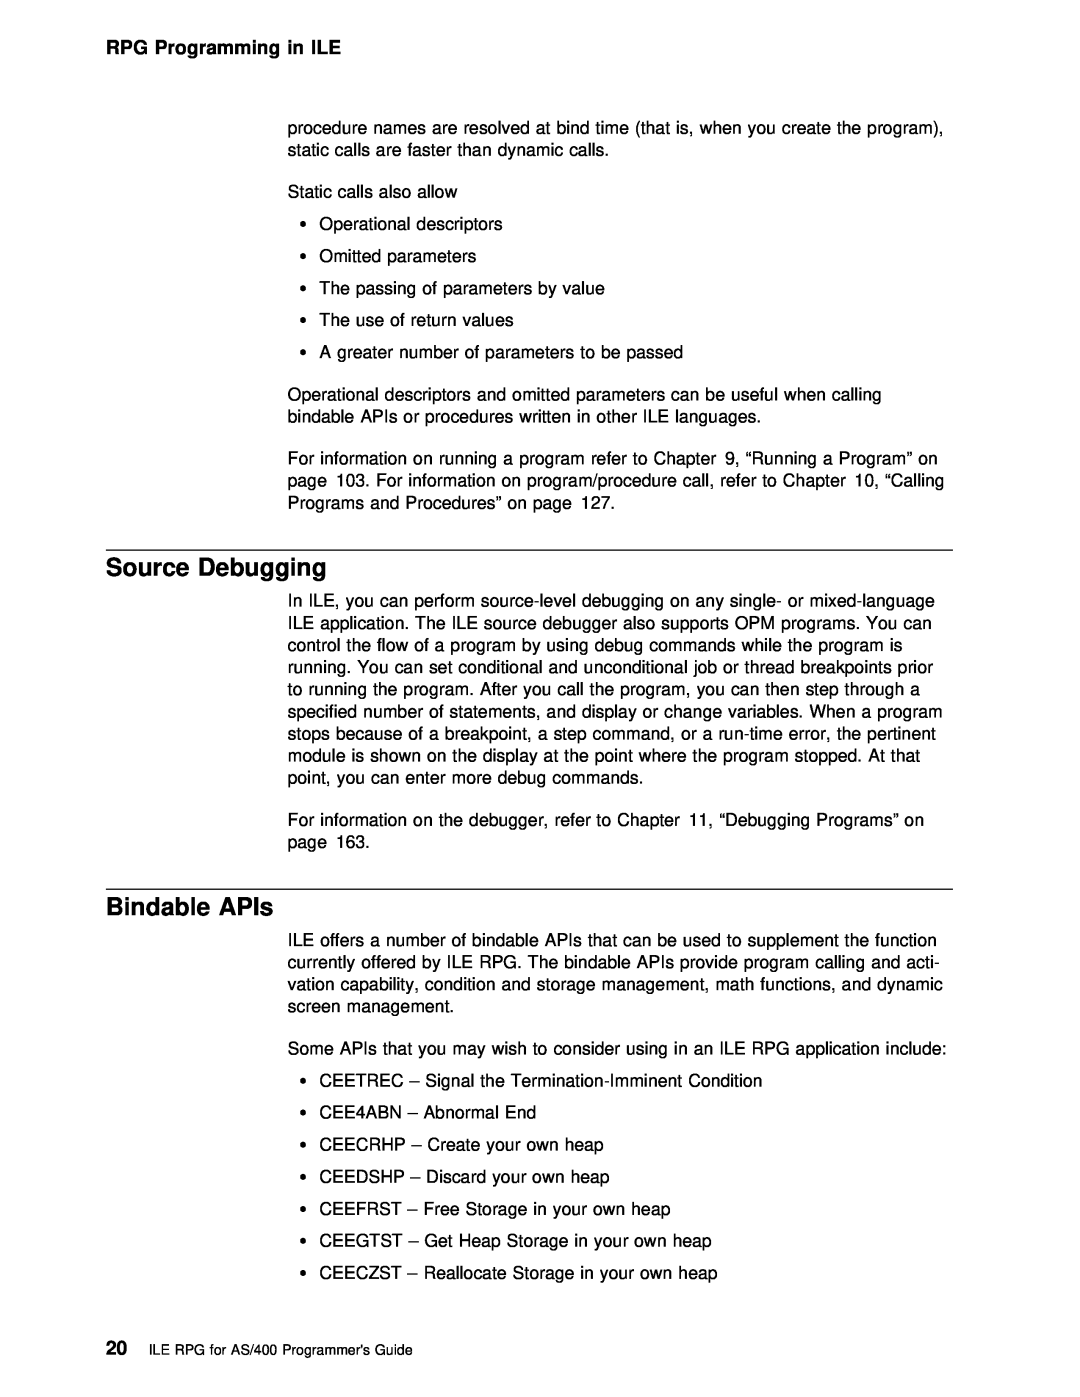 IBM AS/400 manual Source Debugging, Bindable APIs, RPG Programming in ILE, shown 